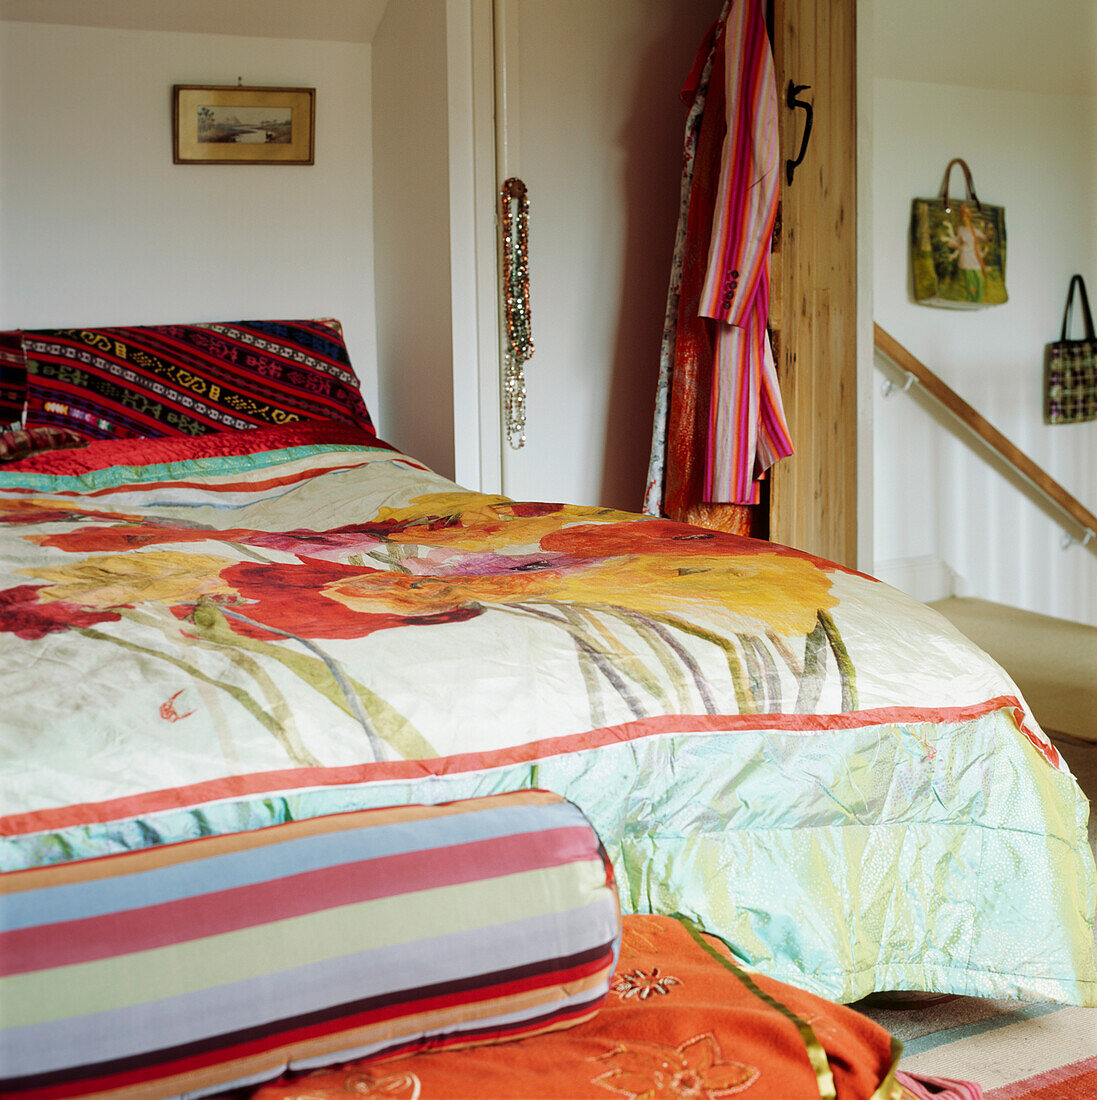 Handbedruckter Blumenstoff auf einer schillernden Seidendecke in einem farbenfrohen Schlafzimmer